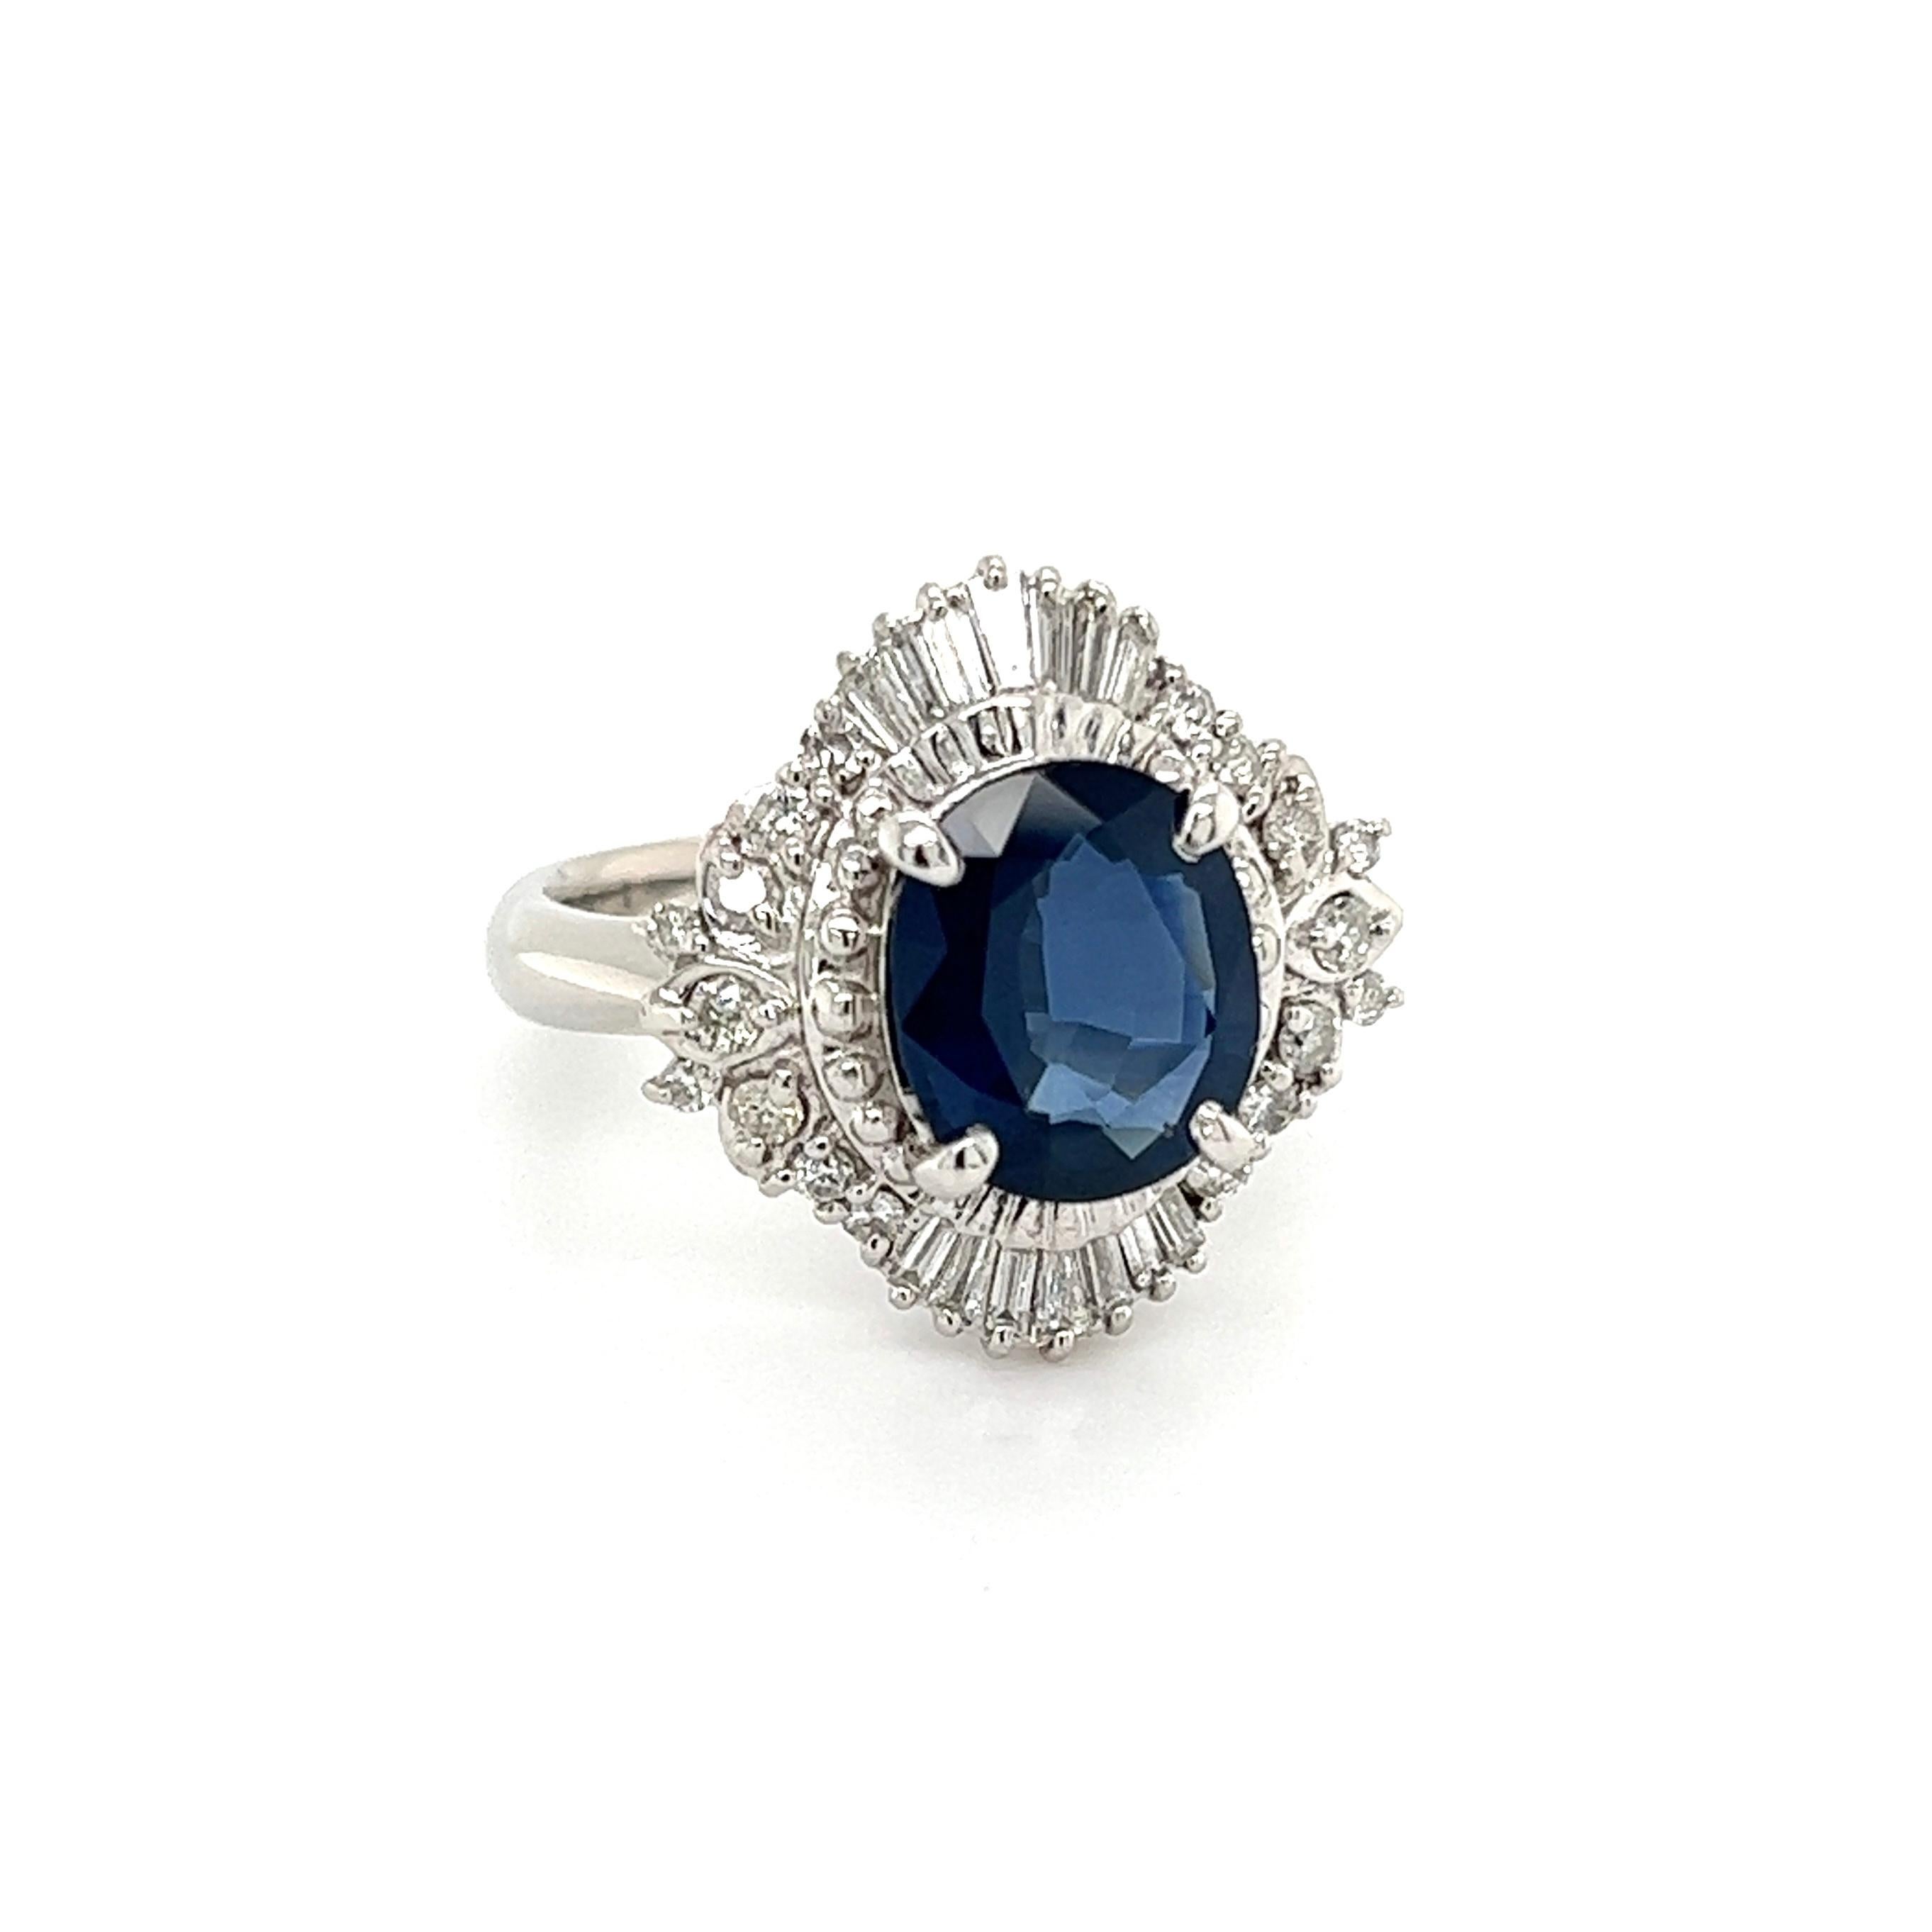 Einfach schön! Blauer Saphir und Diamant Art Deco Revival Platin Ring. In der Mitte ein sicher gefasster ovaler blauer Saphir mit einem Gewicht von ca. 2,84 Karat, umgeben von Diamanten mit einem Gewicht von ca. 0,55 tcw. Handgefertigte